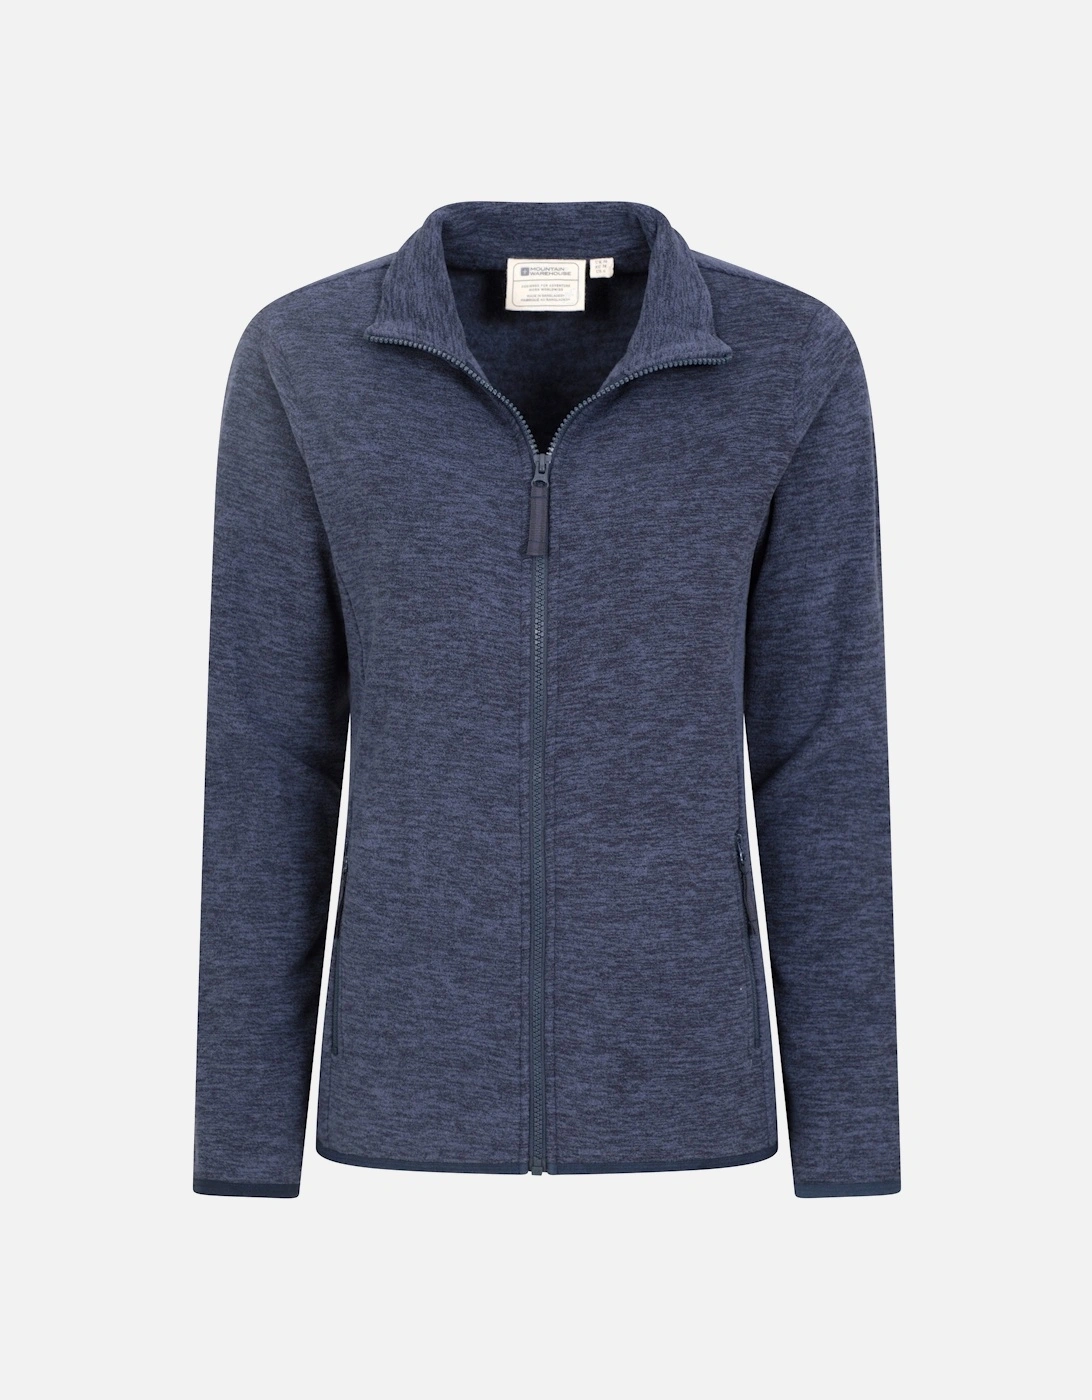 Womens/Ladies Snowdon II Melange Full Zip Fleece Jacket